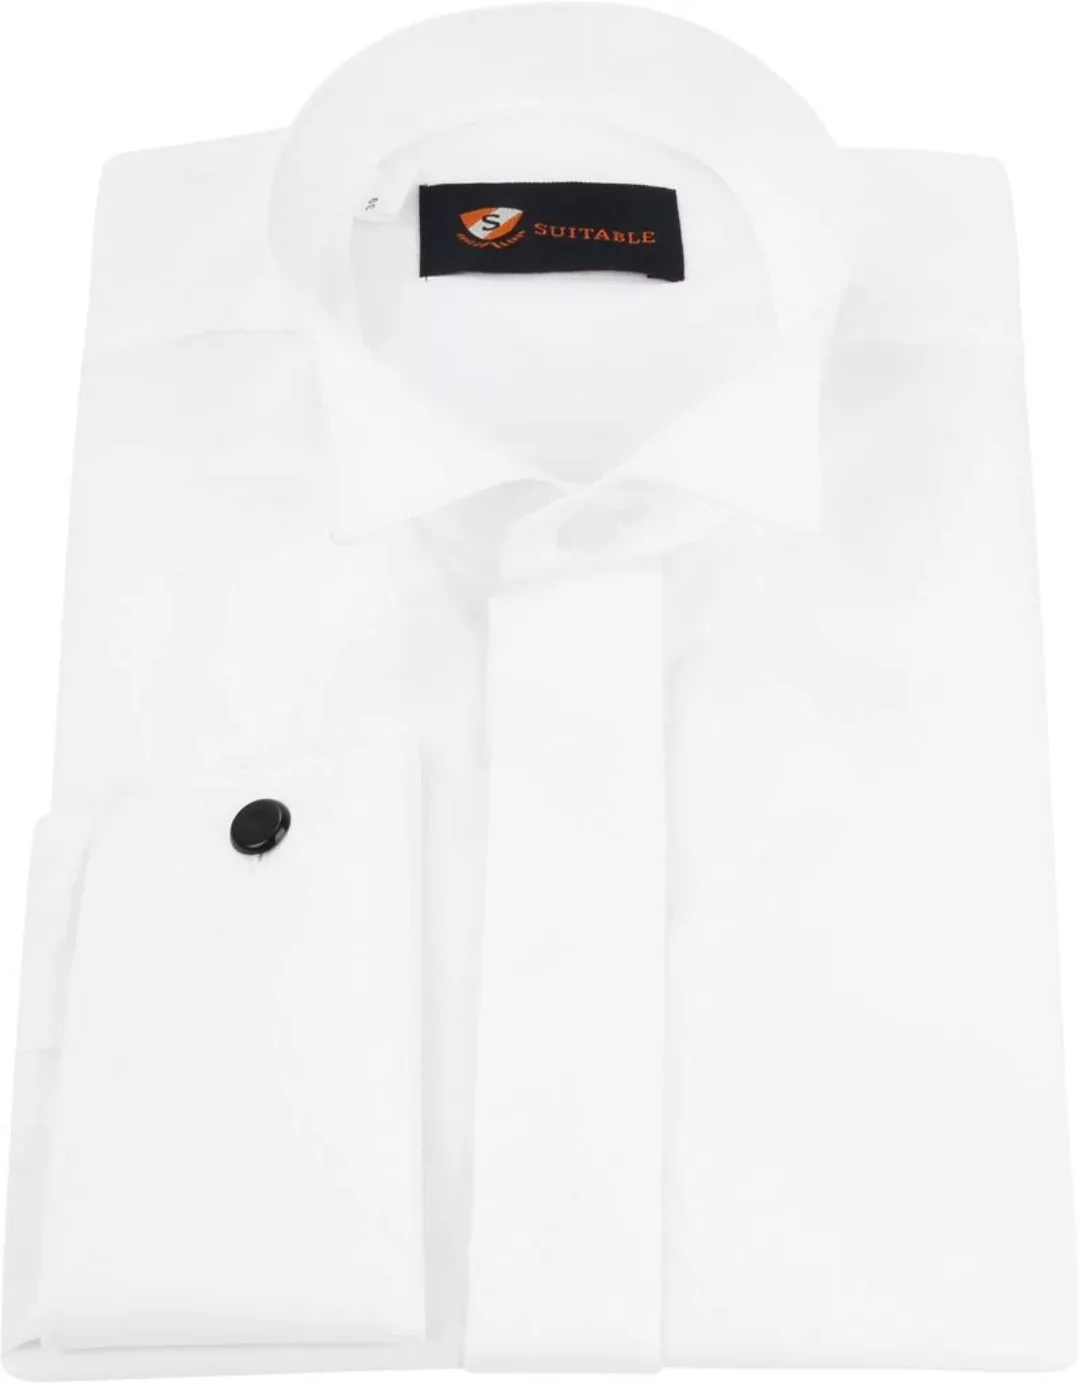 Suitable Hemd Weiß Plissiert - Größe 38 günstig online kaufen